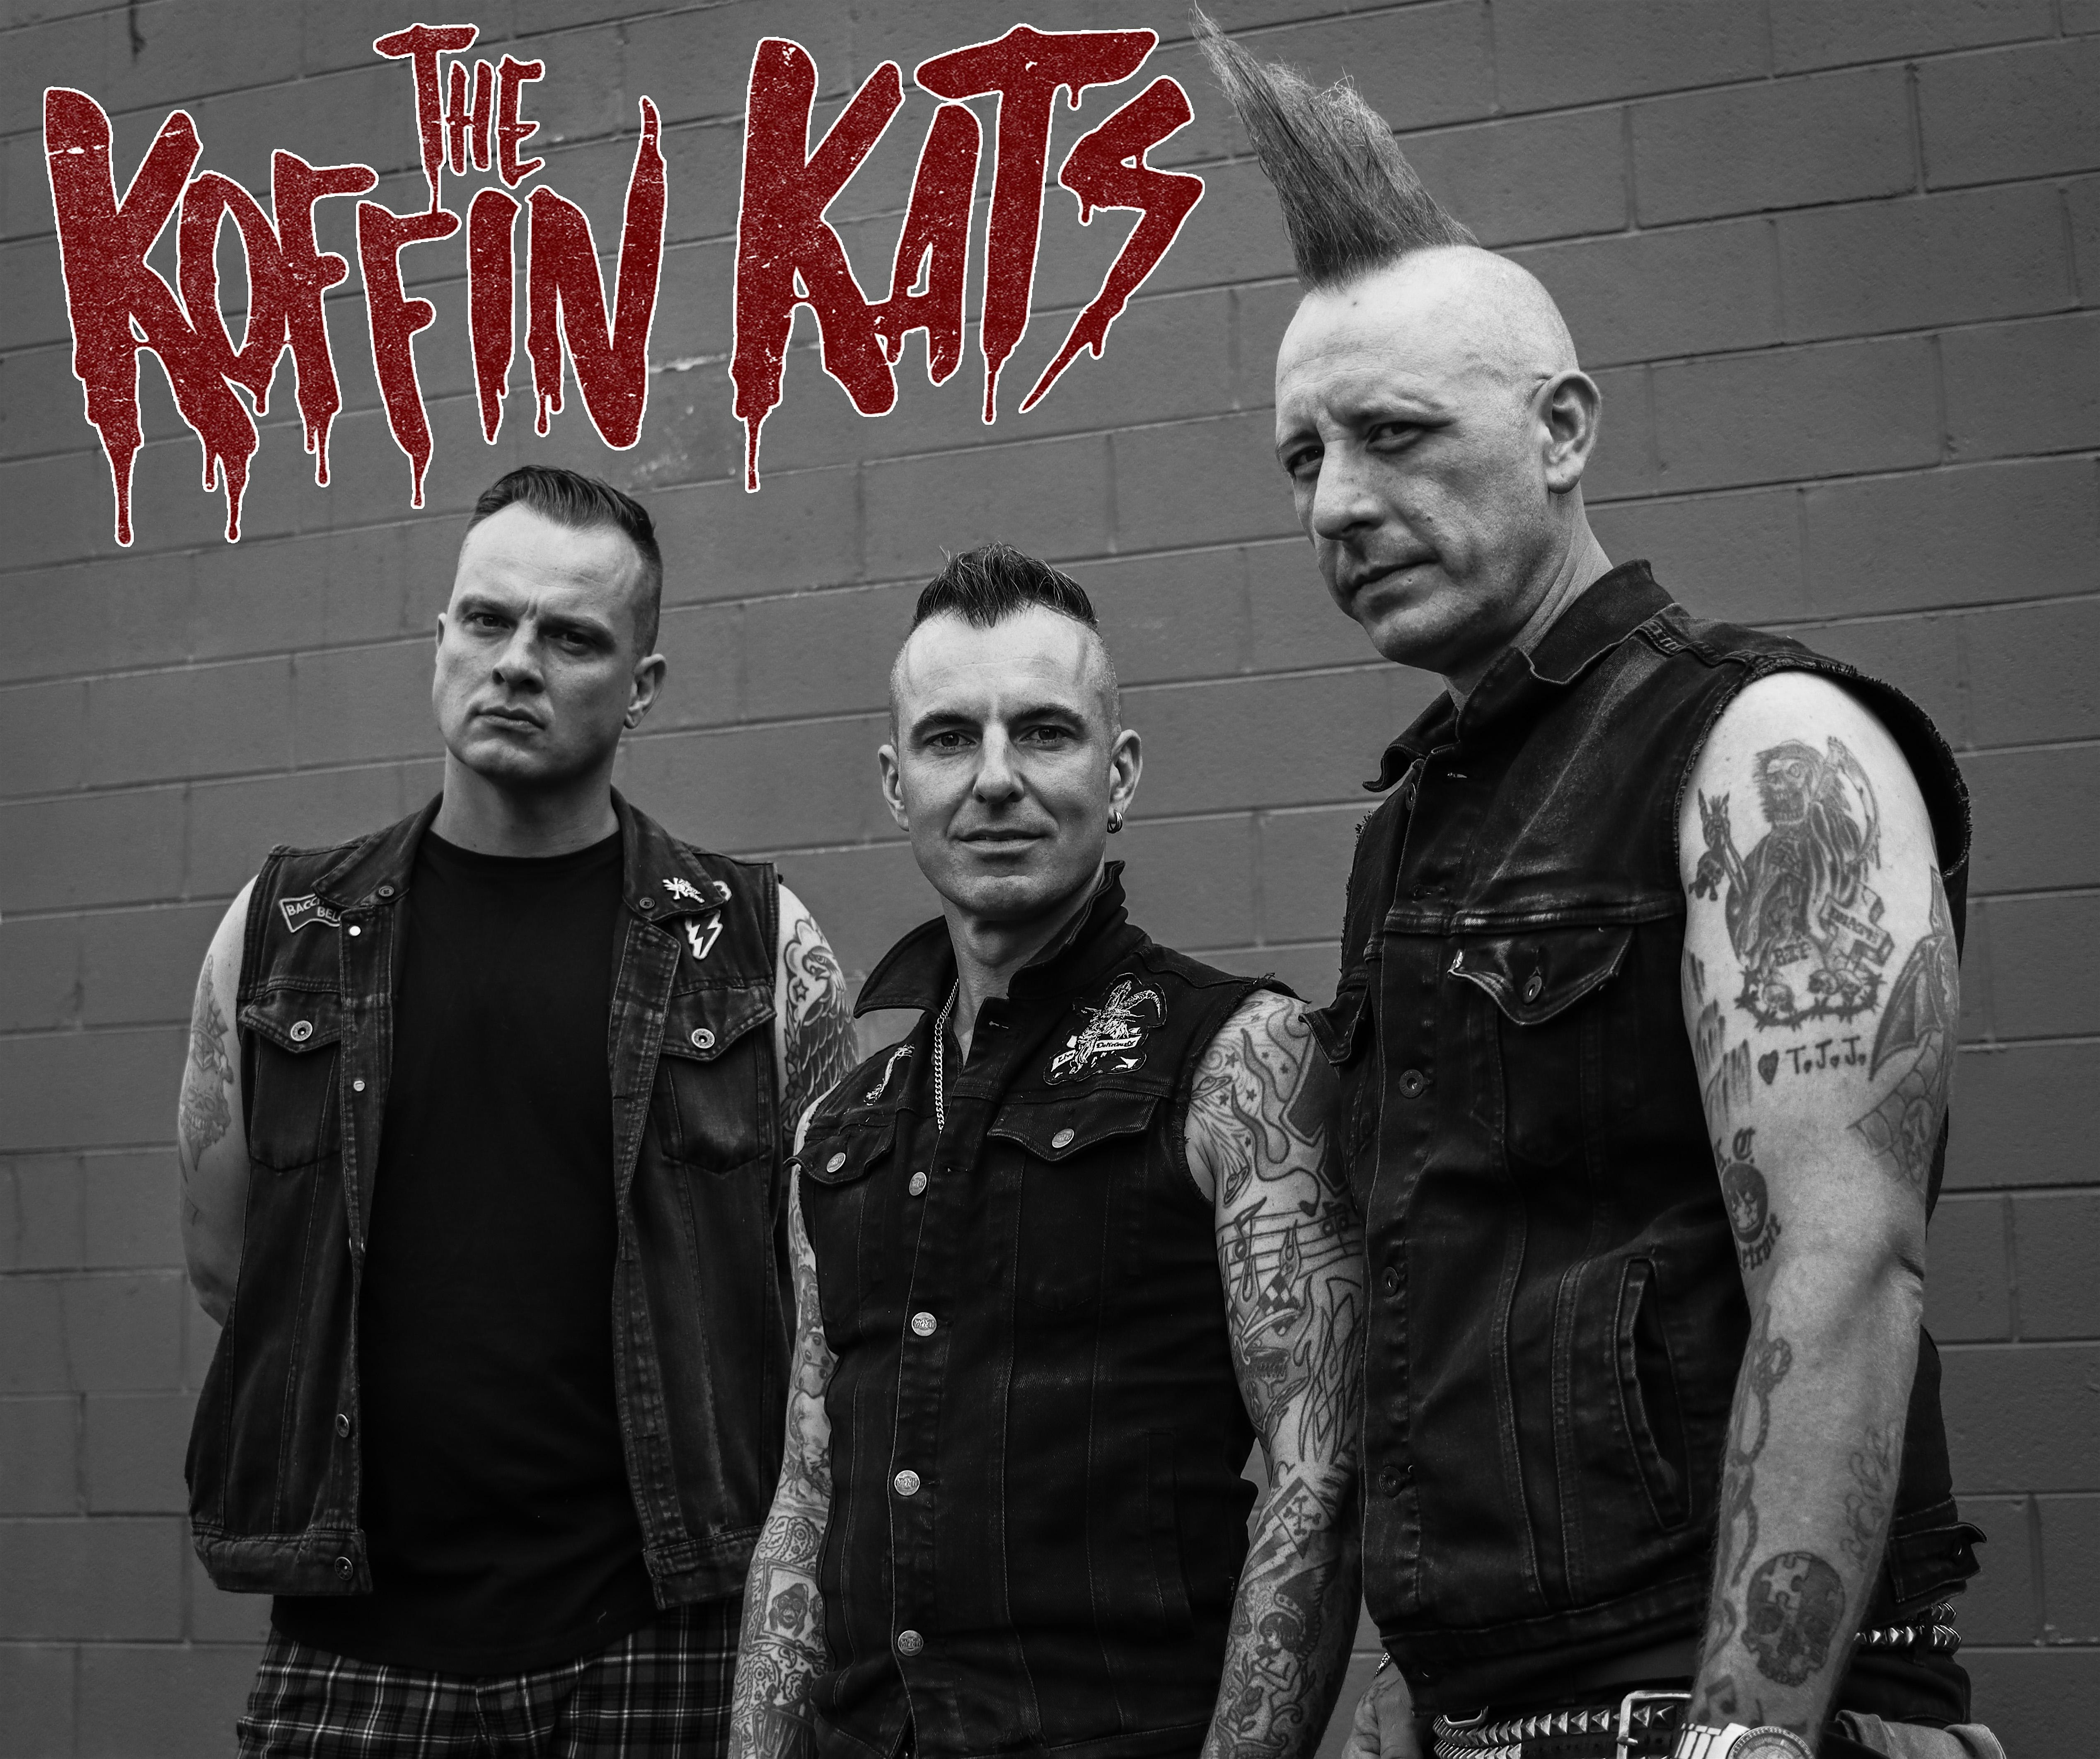 The Koffin Kats